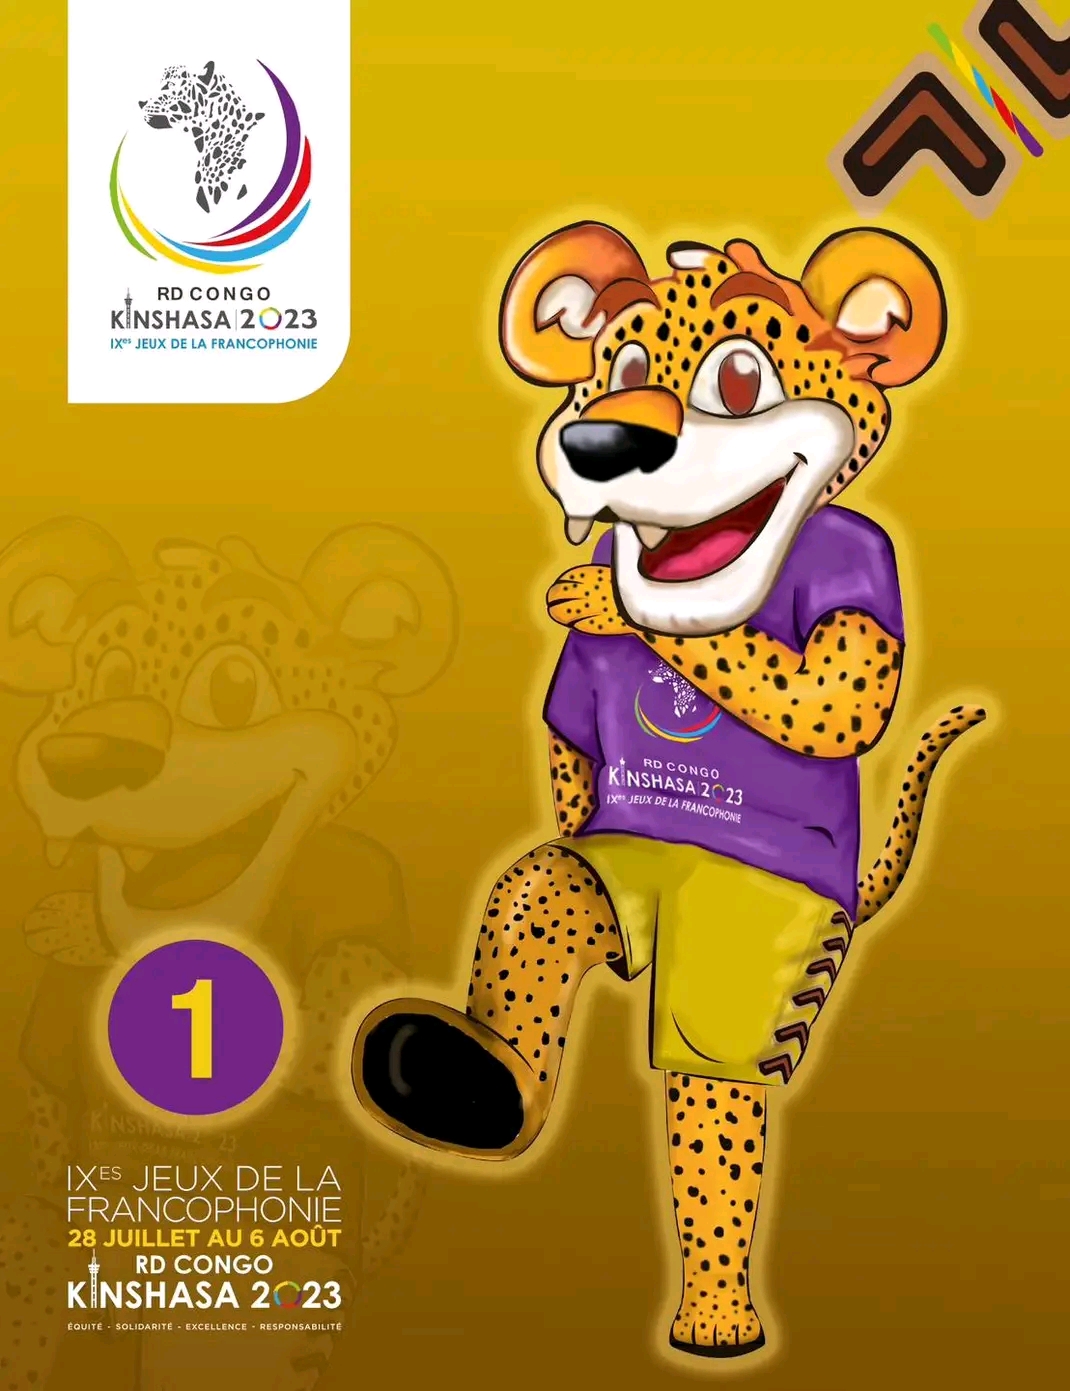 Masano, la mascotte des IXes Jeux de la Francophonie organisés à Kinshasa/ DR